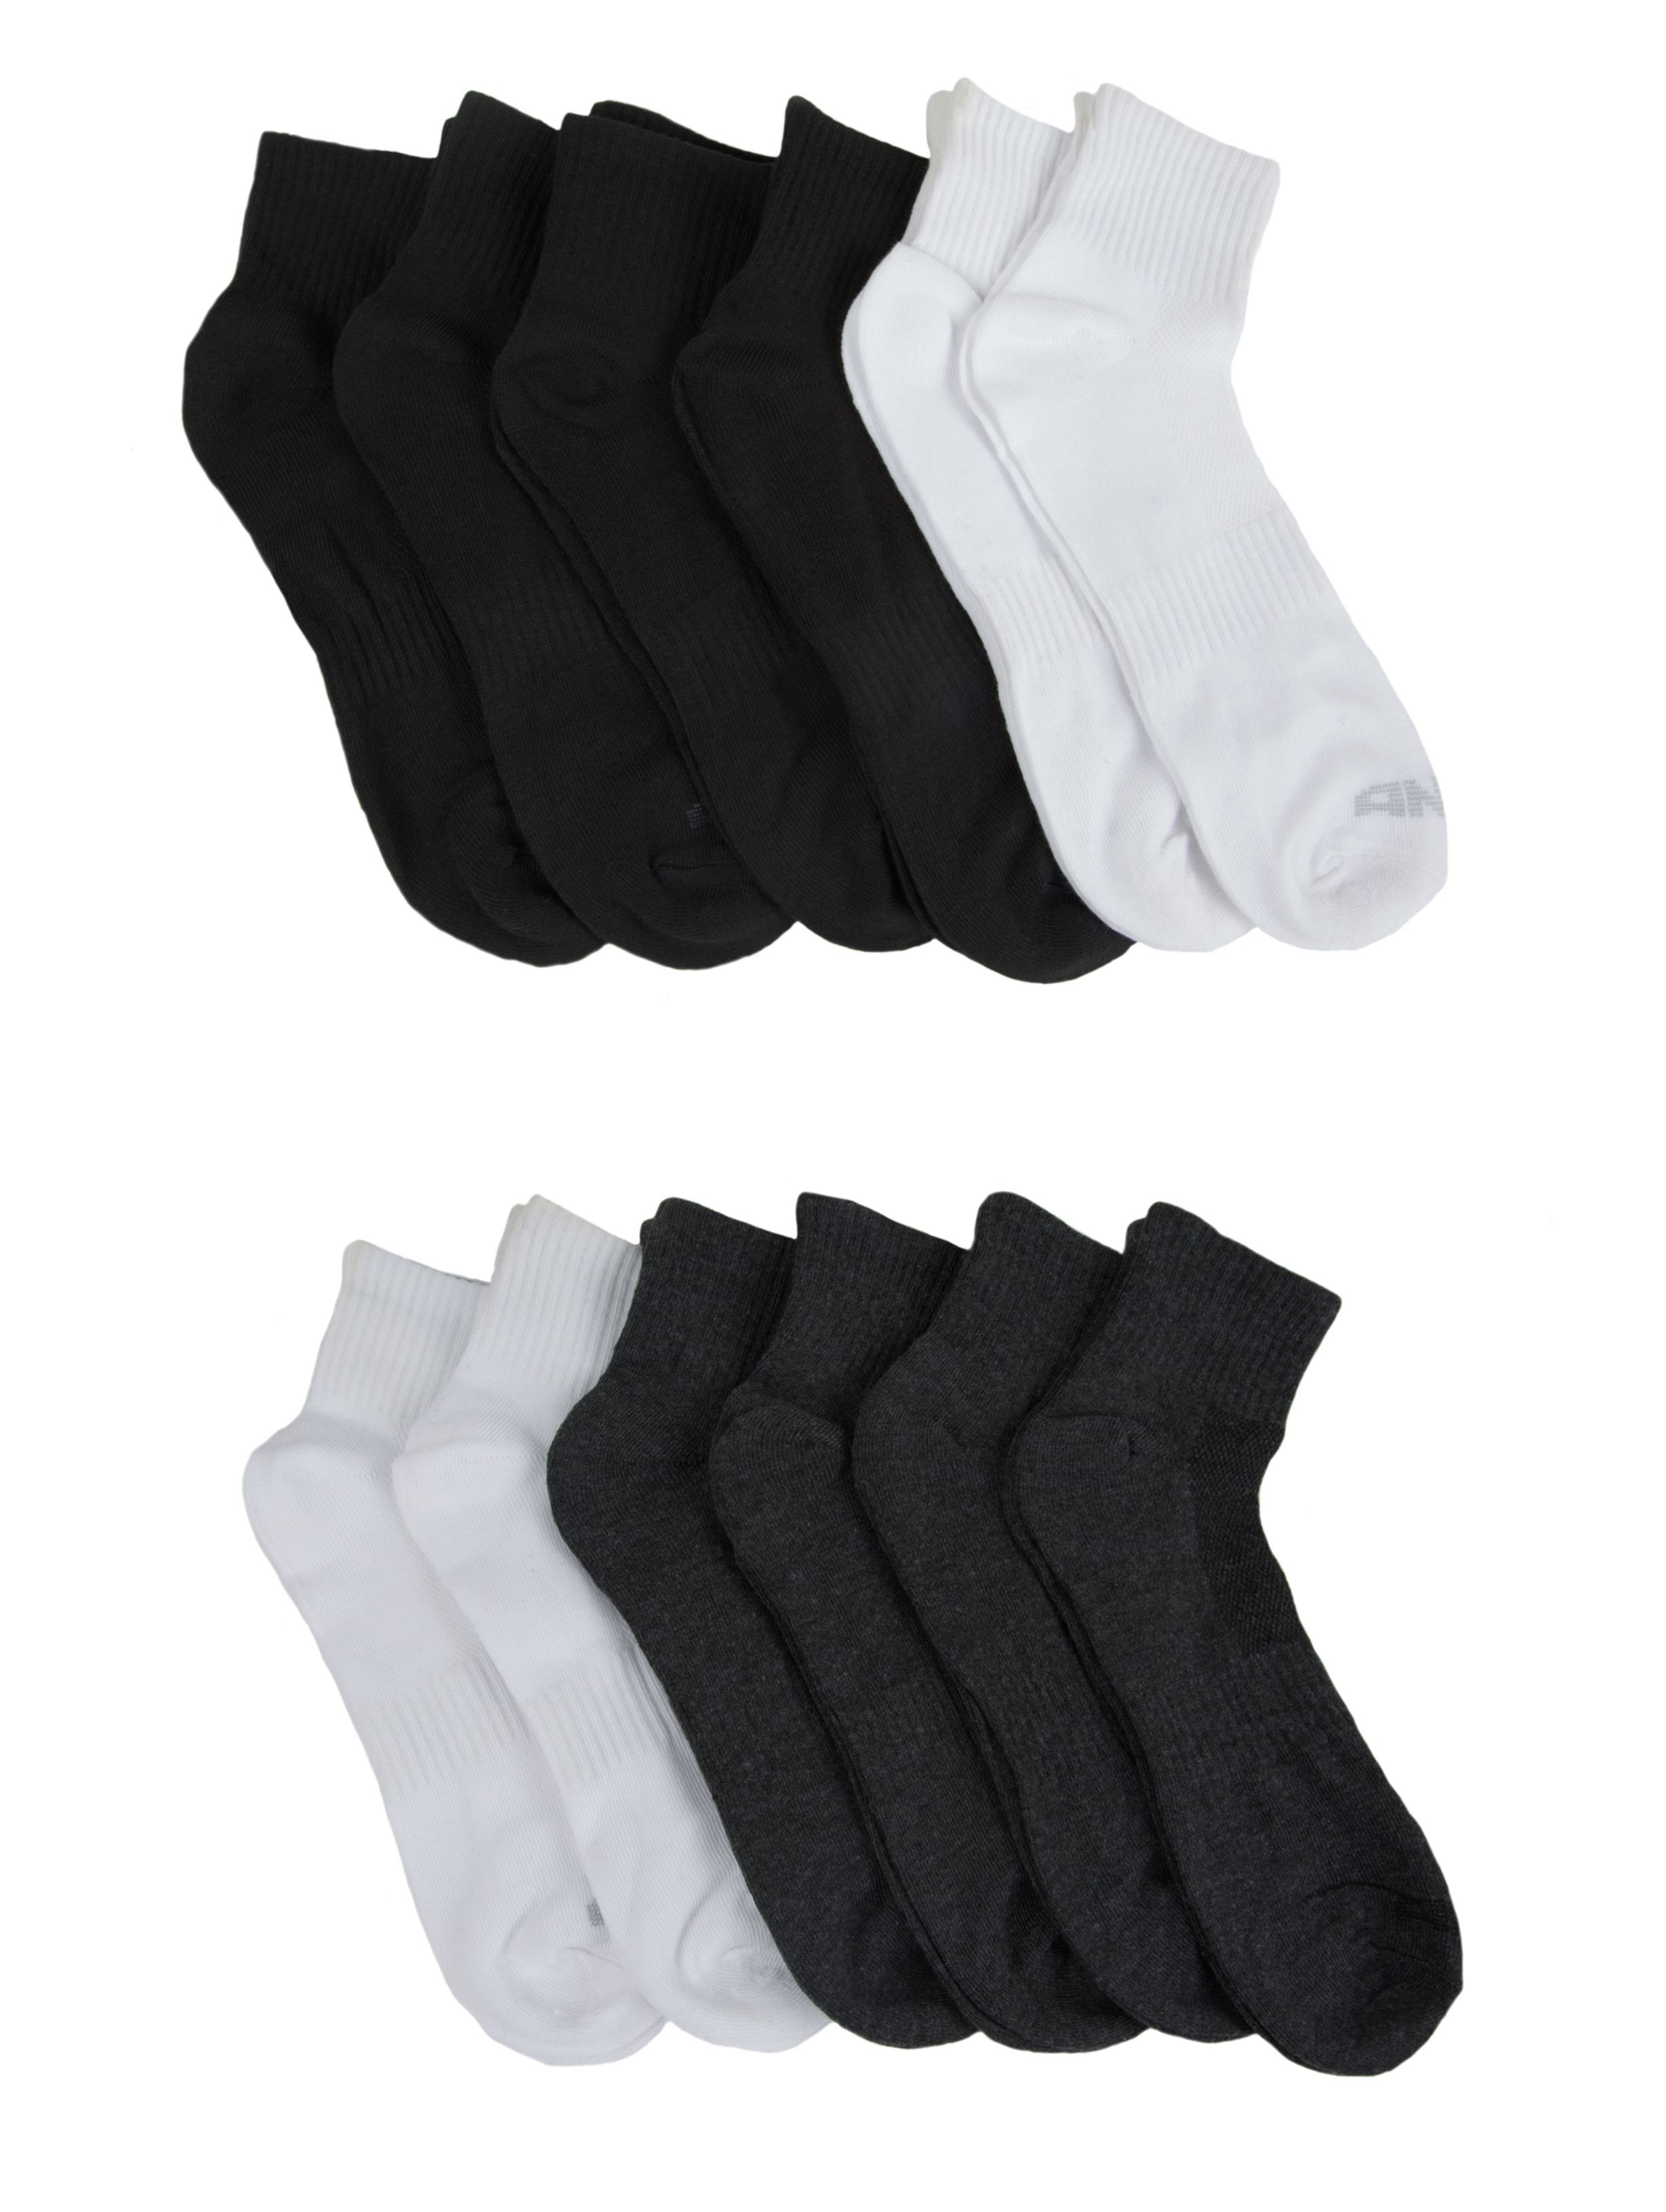 AND1 Men's Gray/White/Black 12 Pair Quarter Cut Socks Sz 10-13 NEW | eBay